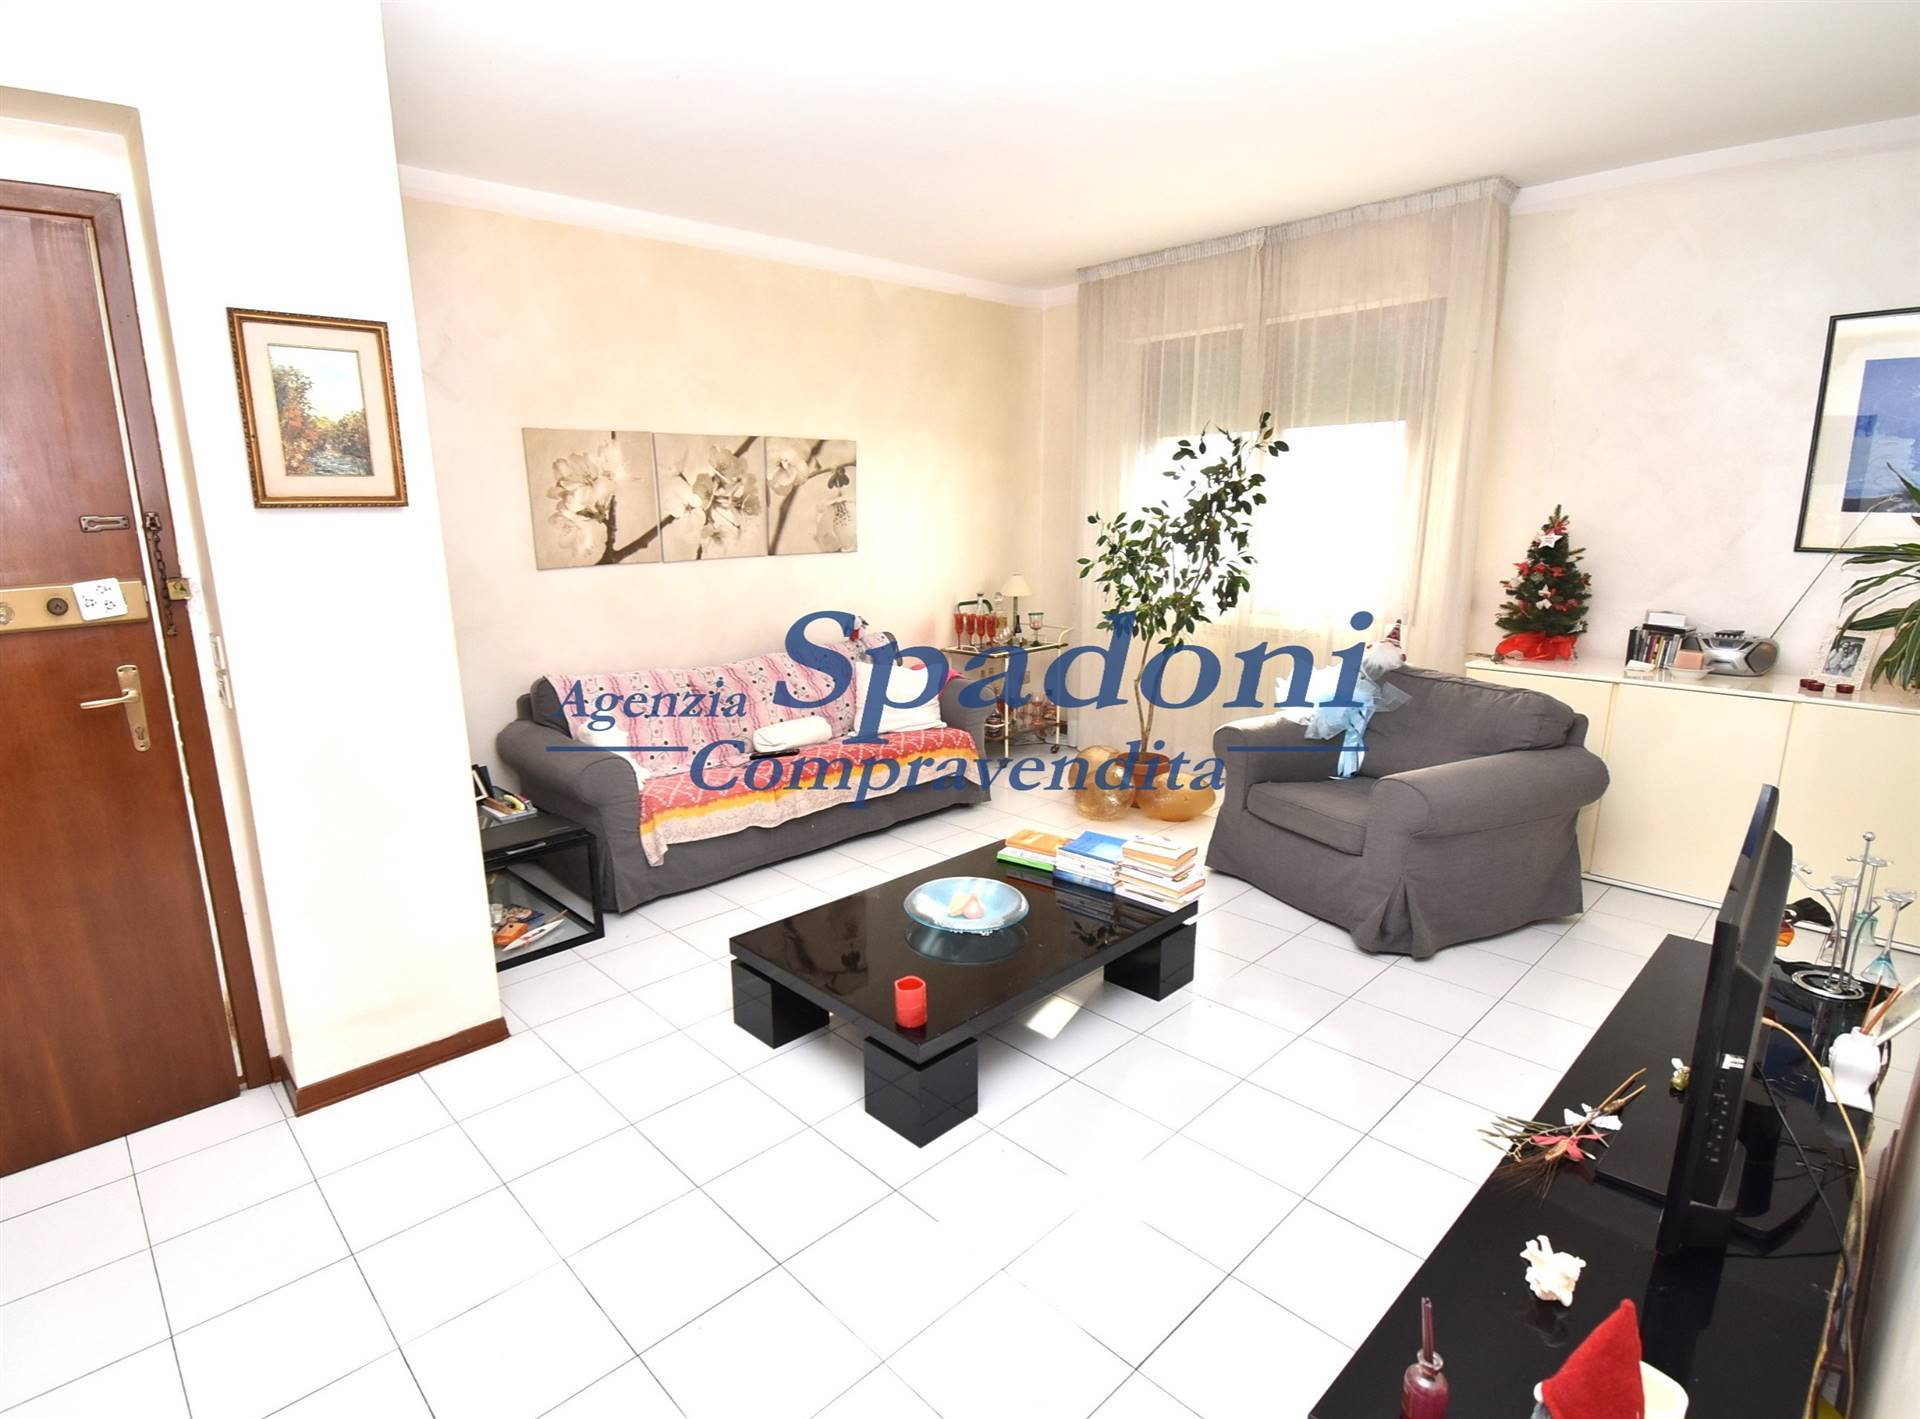 Appartamento in vendita a Buggiano, 5 locali, prezzo € 110.000 | PortaleAgenzieImmobiliari.it